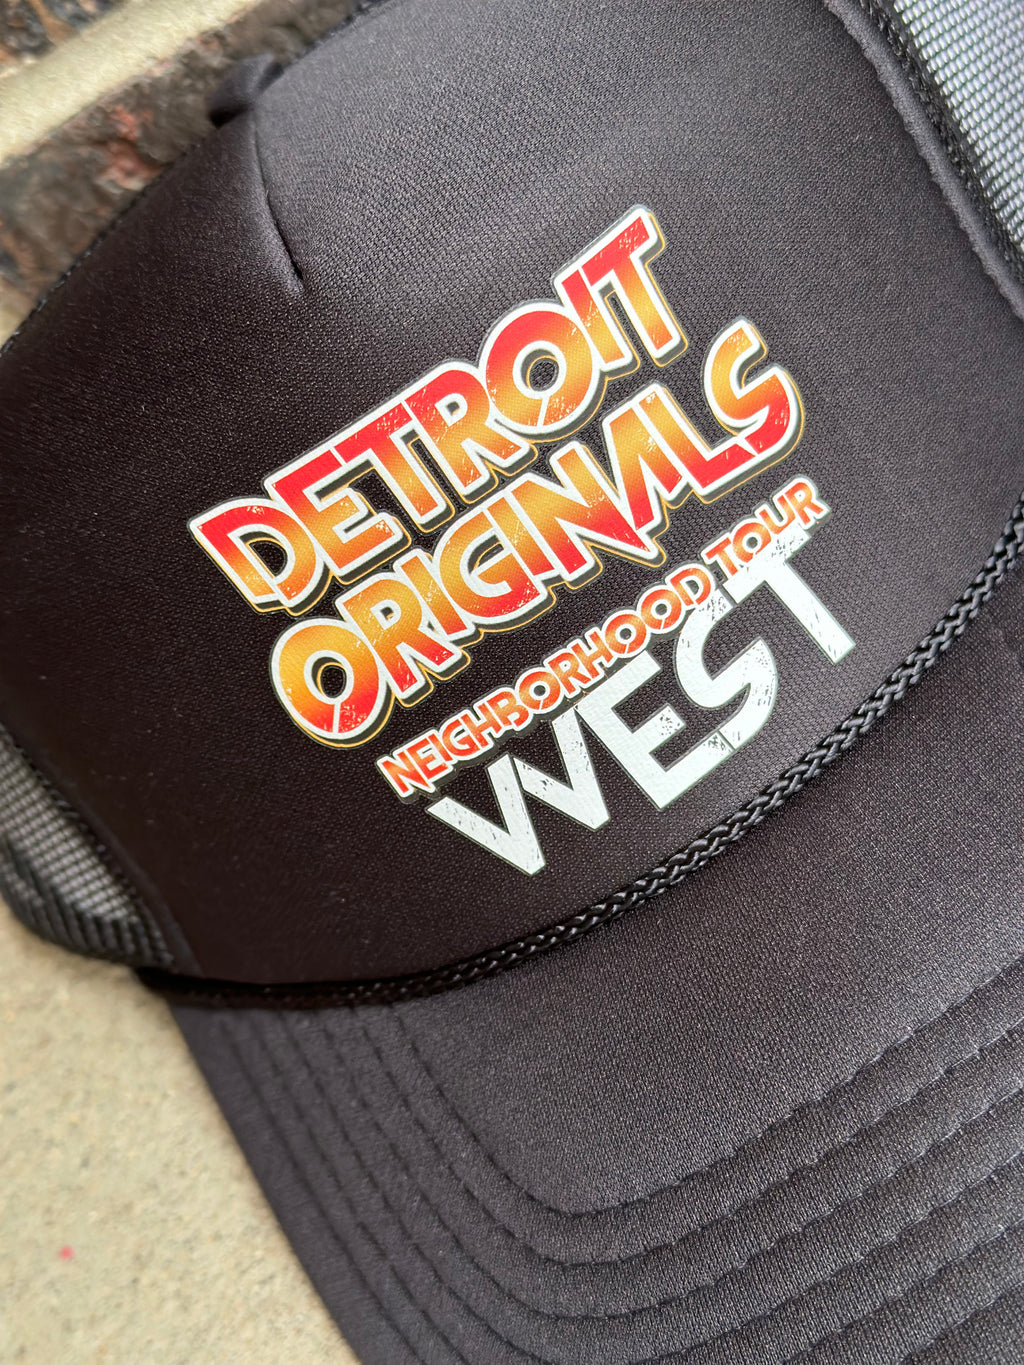 Detroit Originals Neighborhood Tour West Trucker Cap